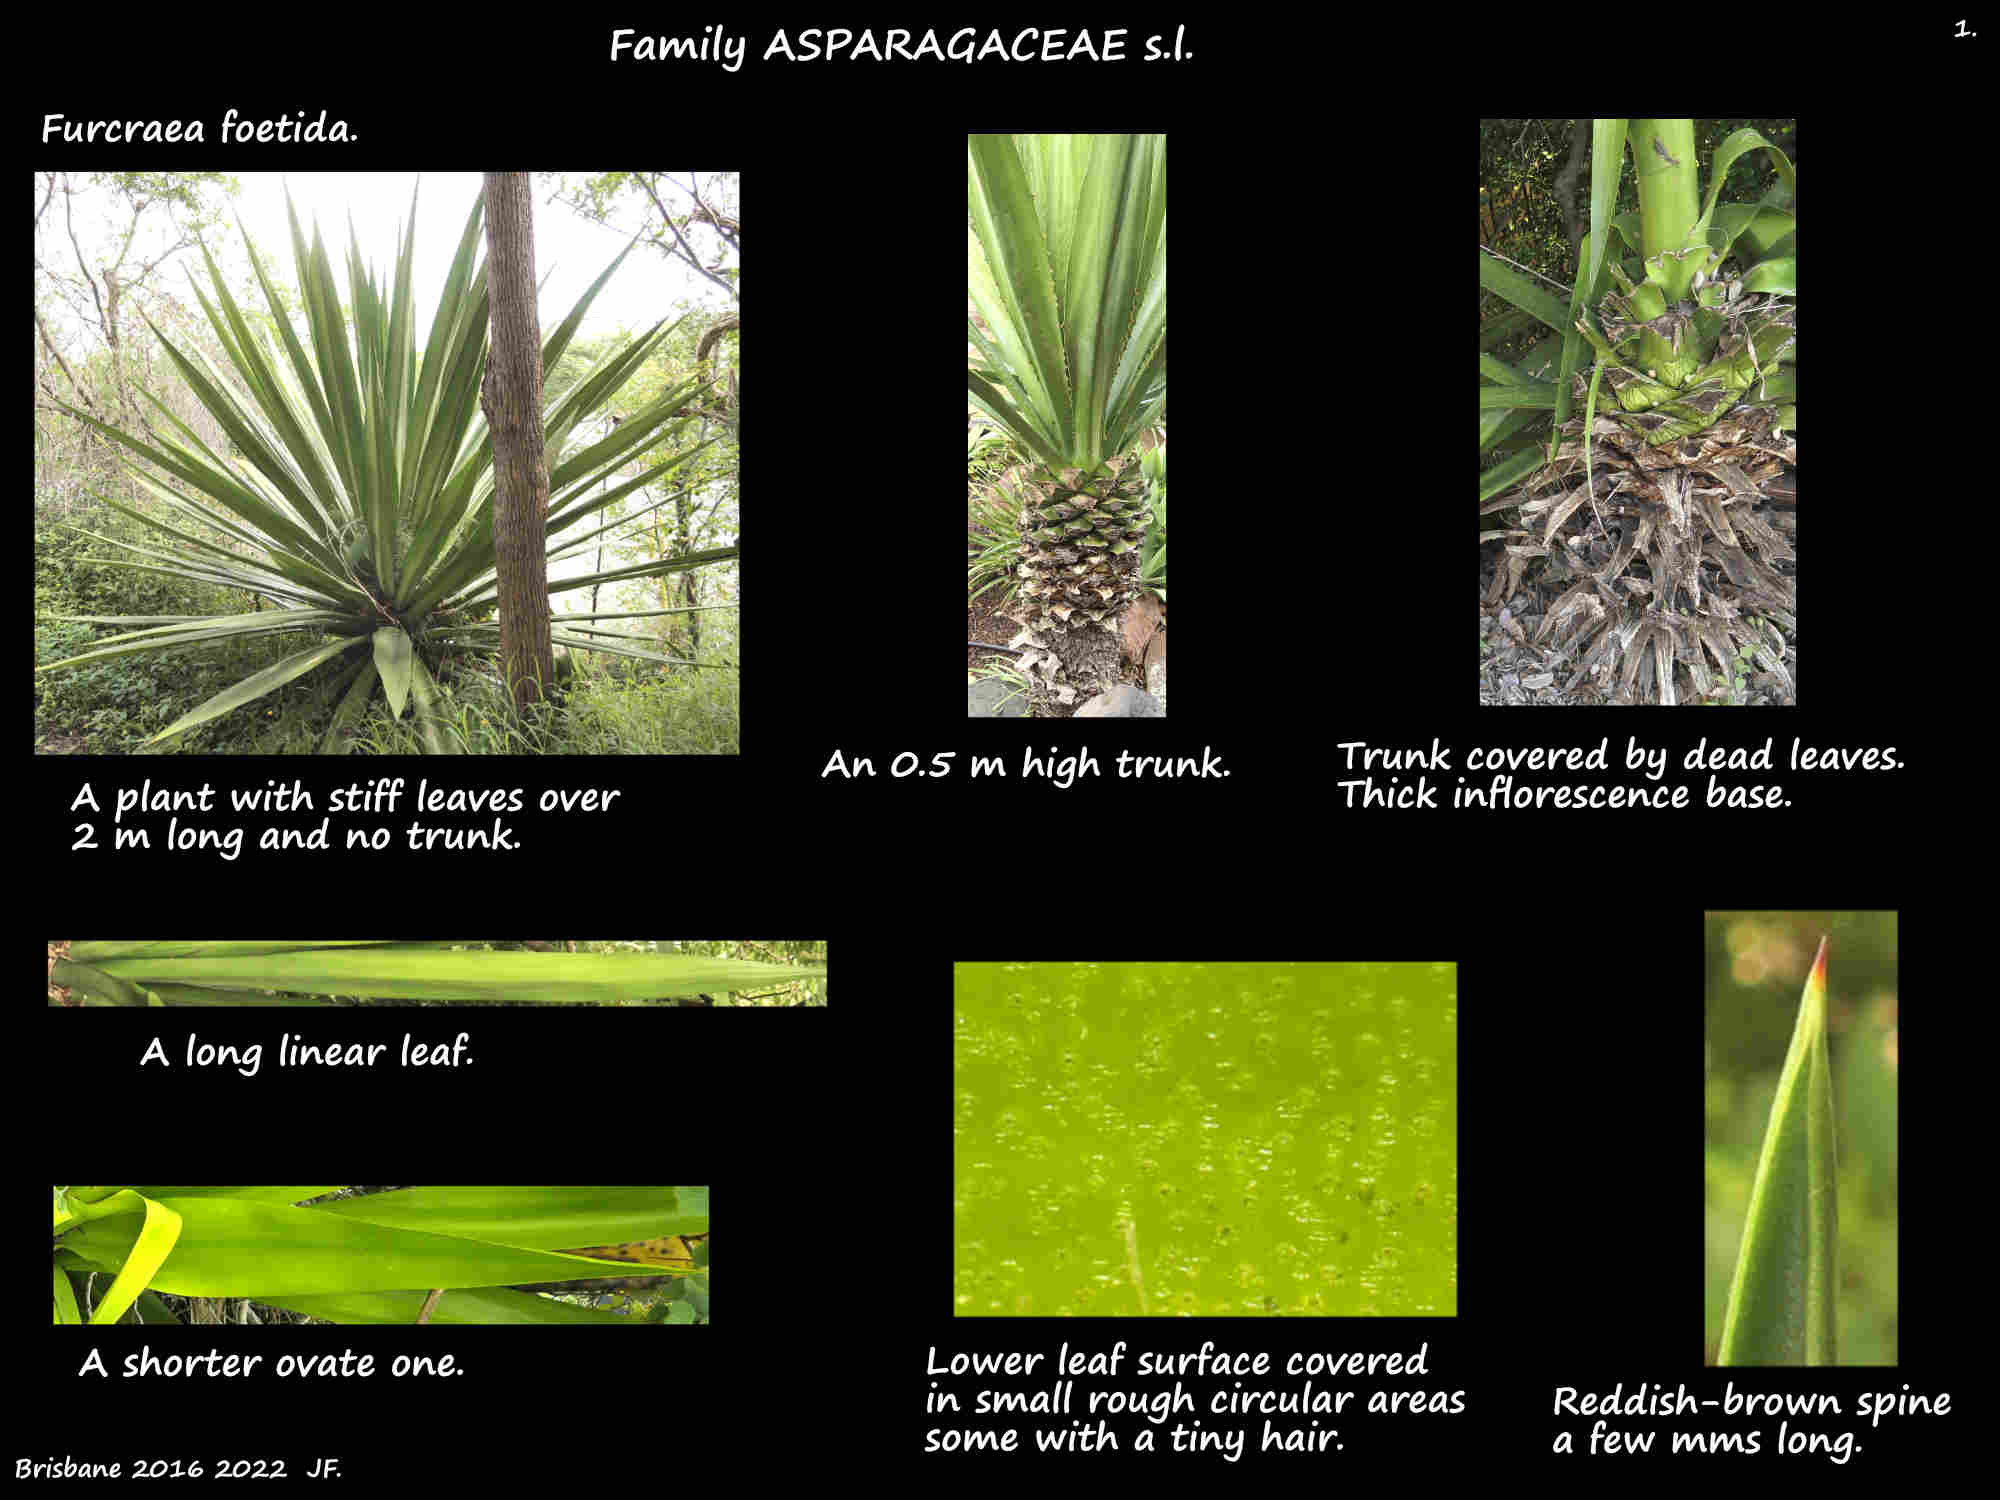 1 Furcraea foetida plants & leaves